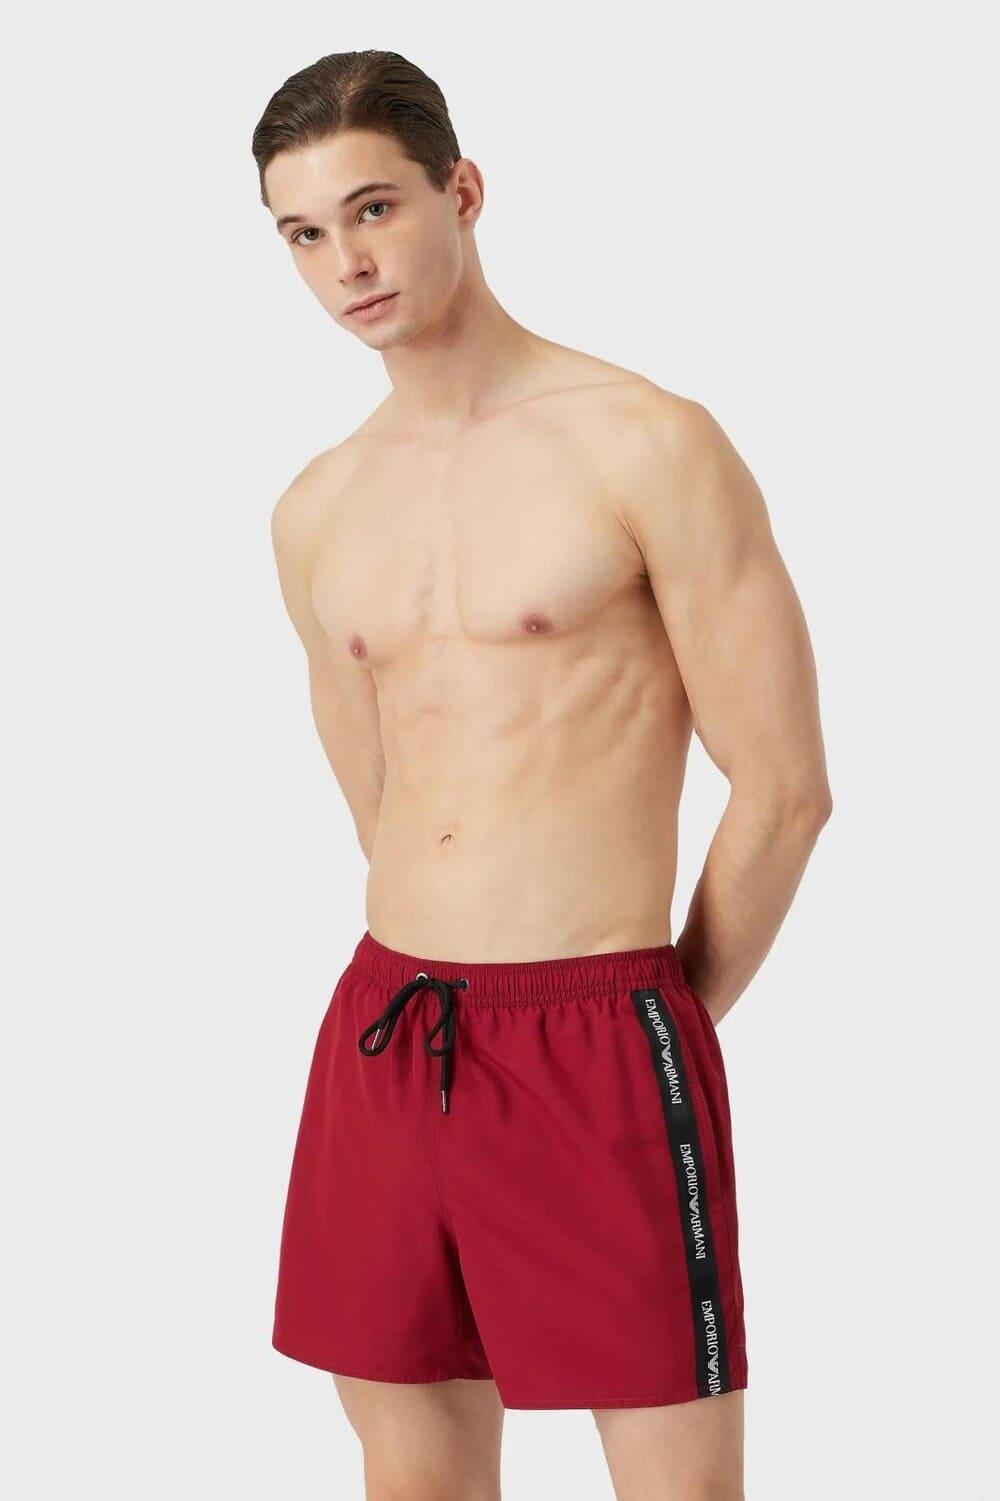 Для мужчин > Мужские купальные шорты Emporio Armani 211740 2R443 купить в интернет-магазине